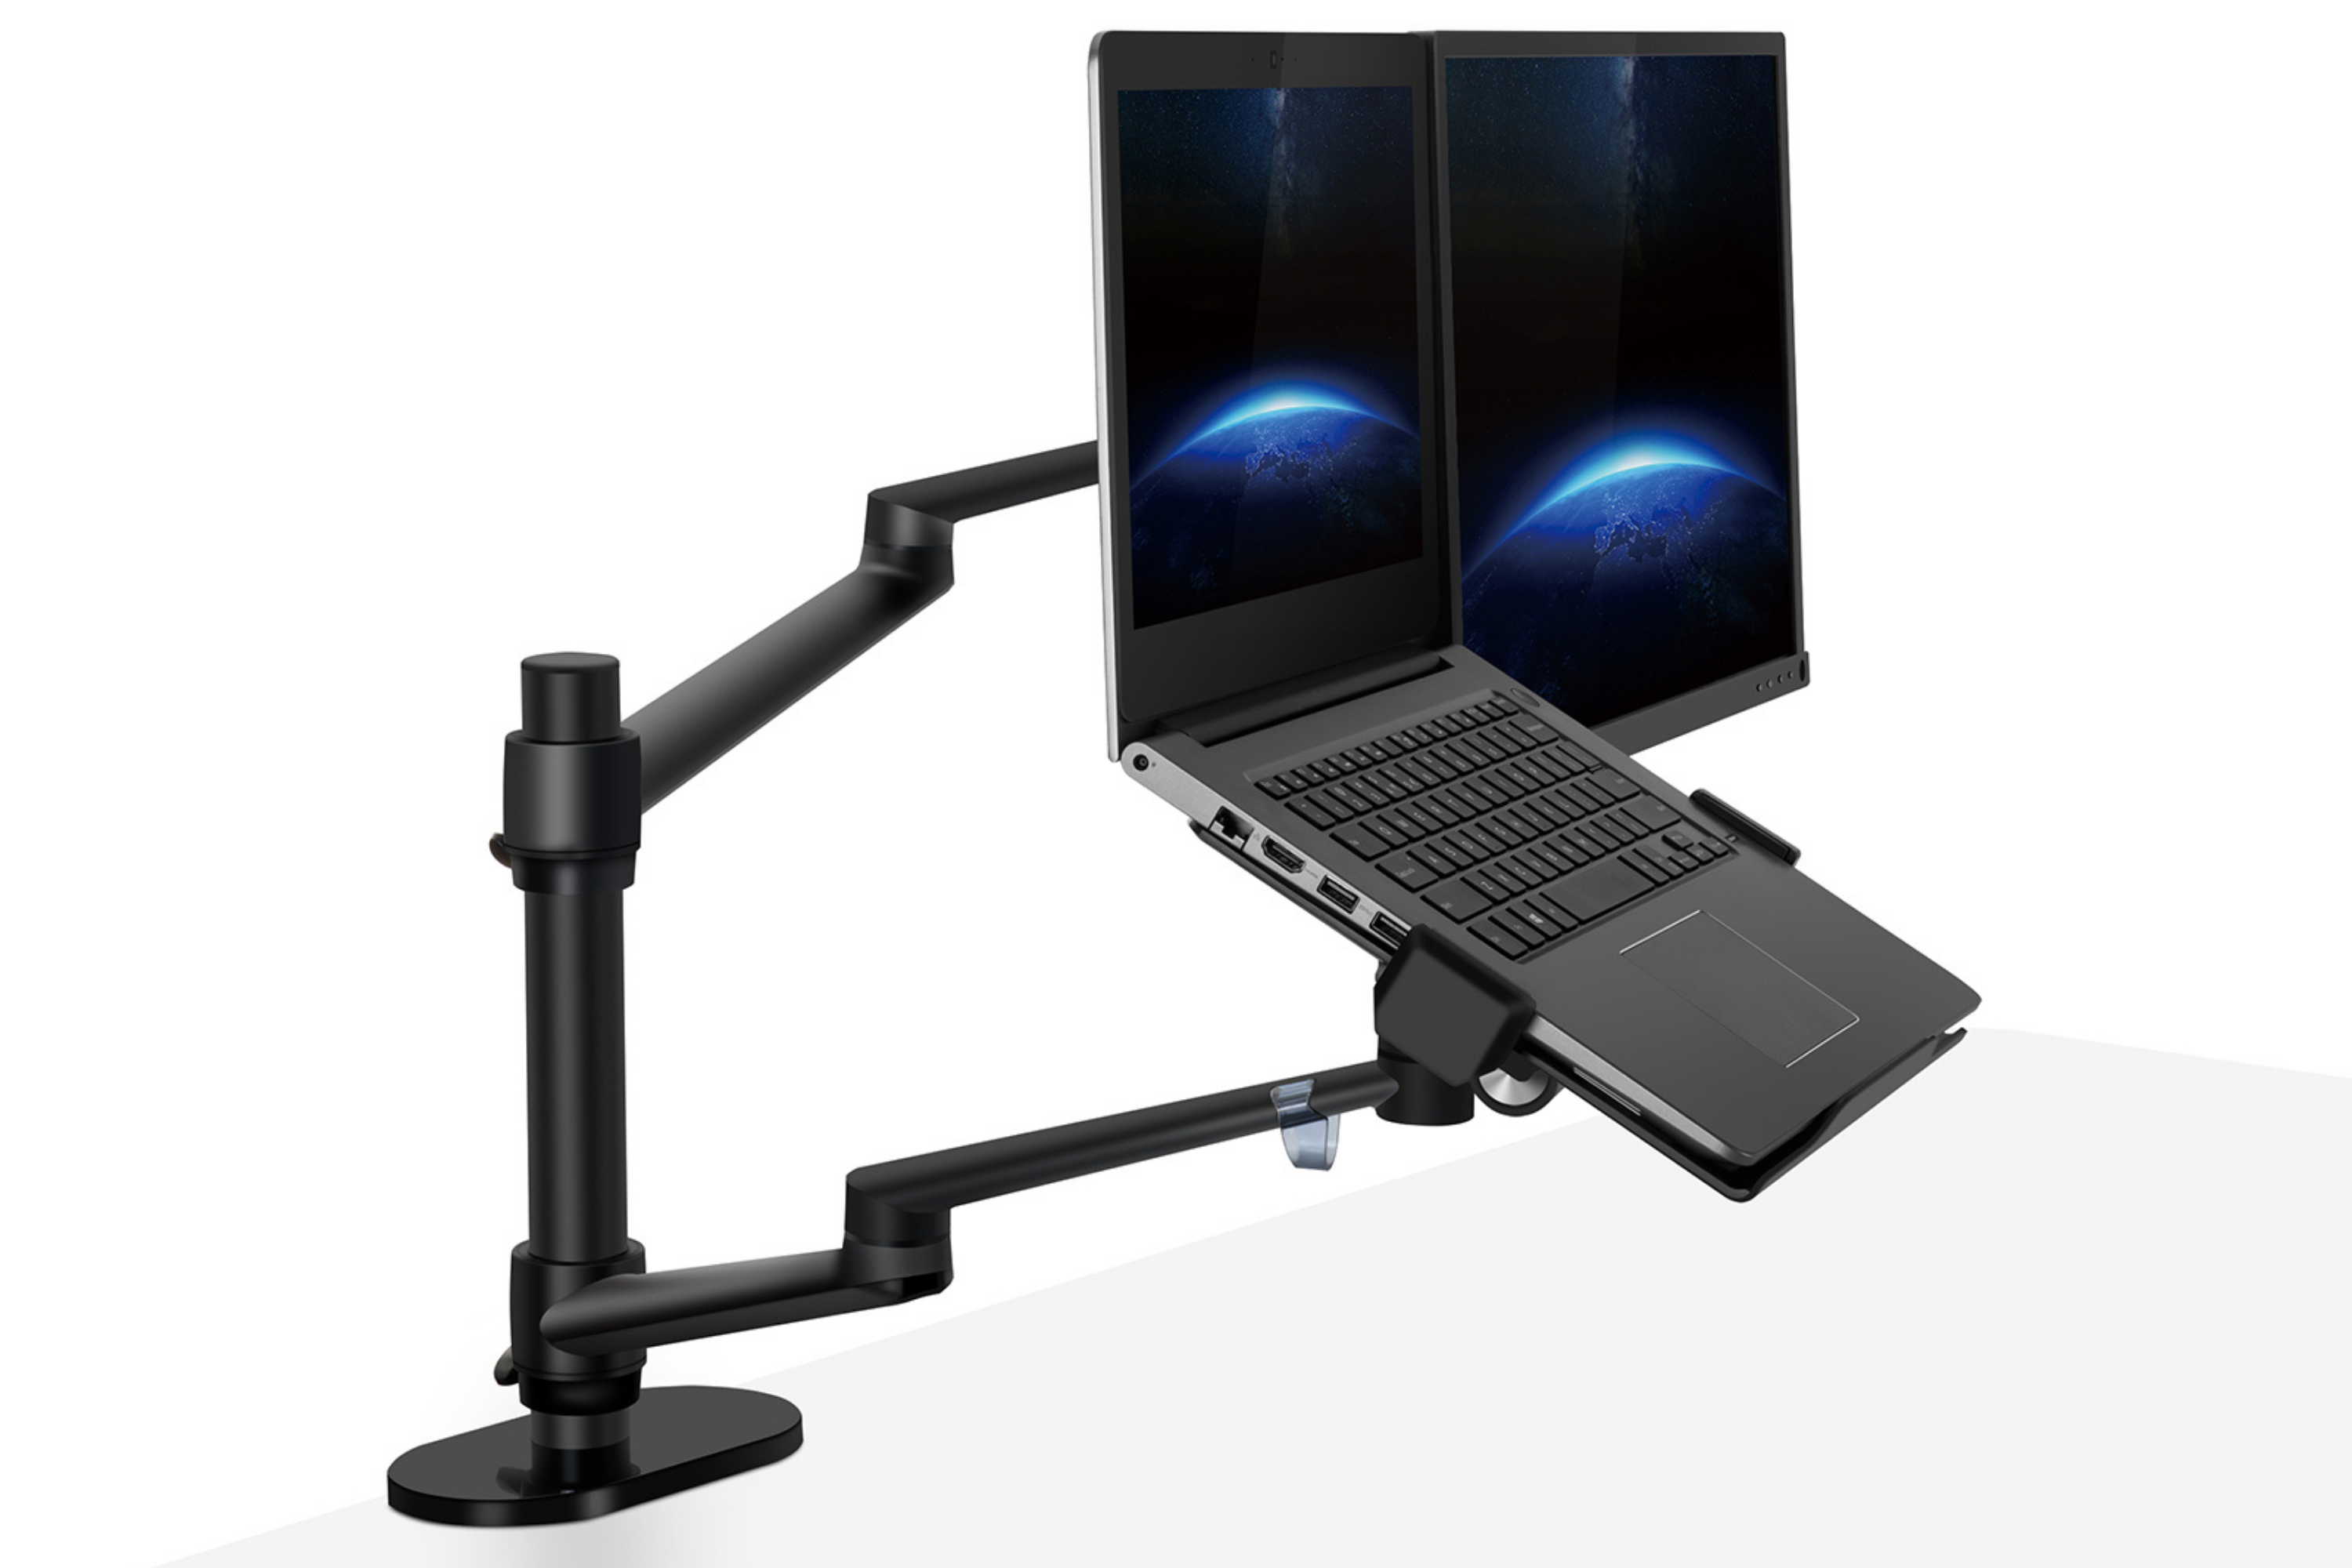 Support d'ordinateur portable pour bras articulés, Supports écran et  rehausseurs pour portables